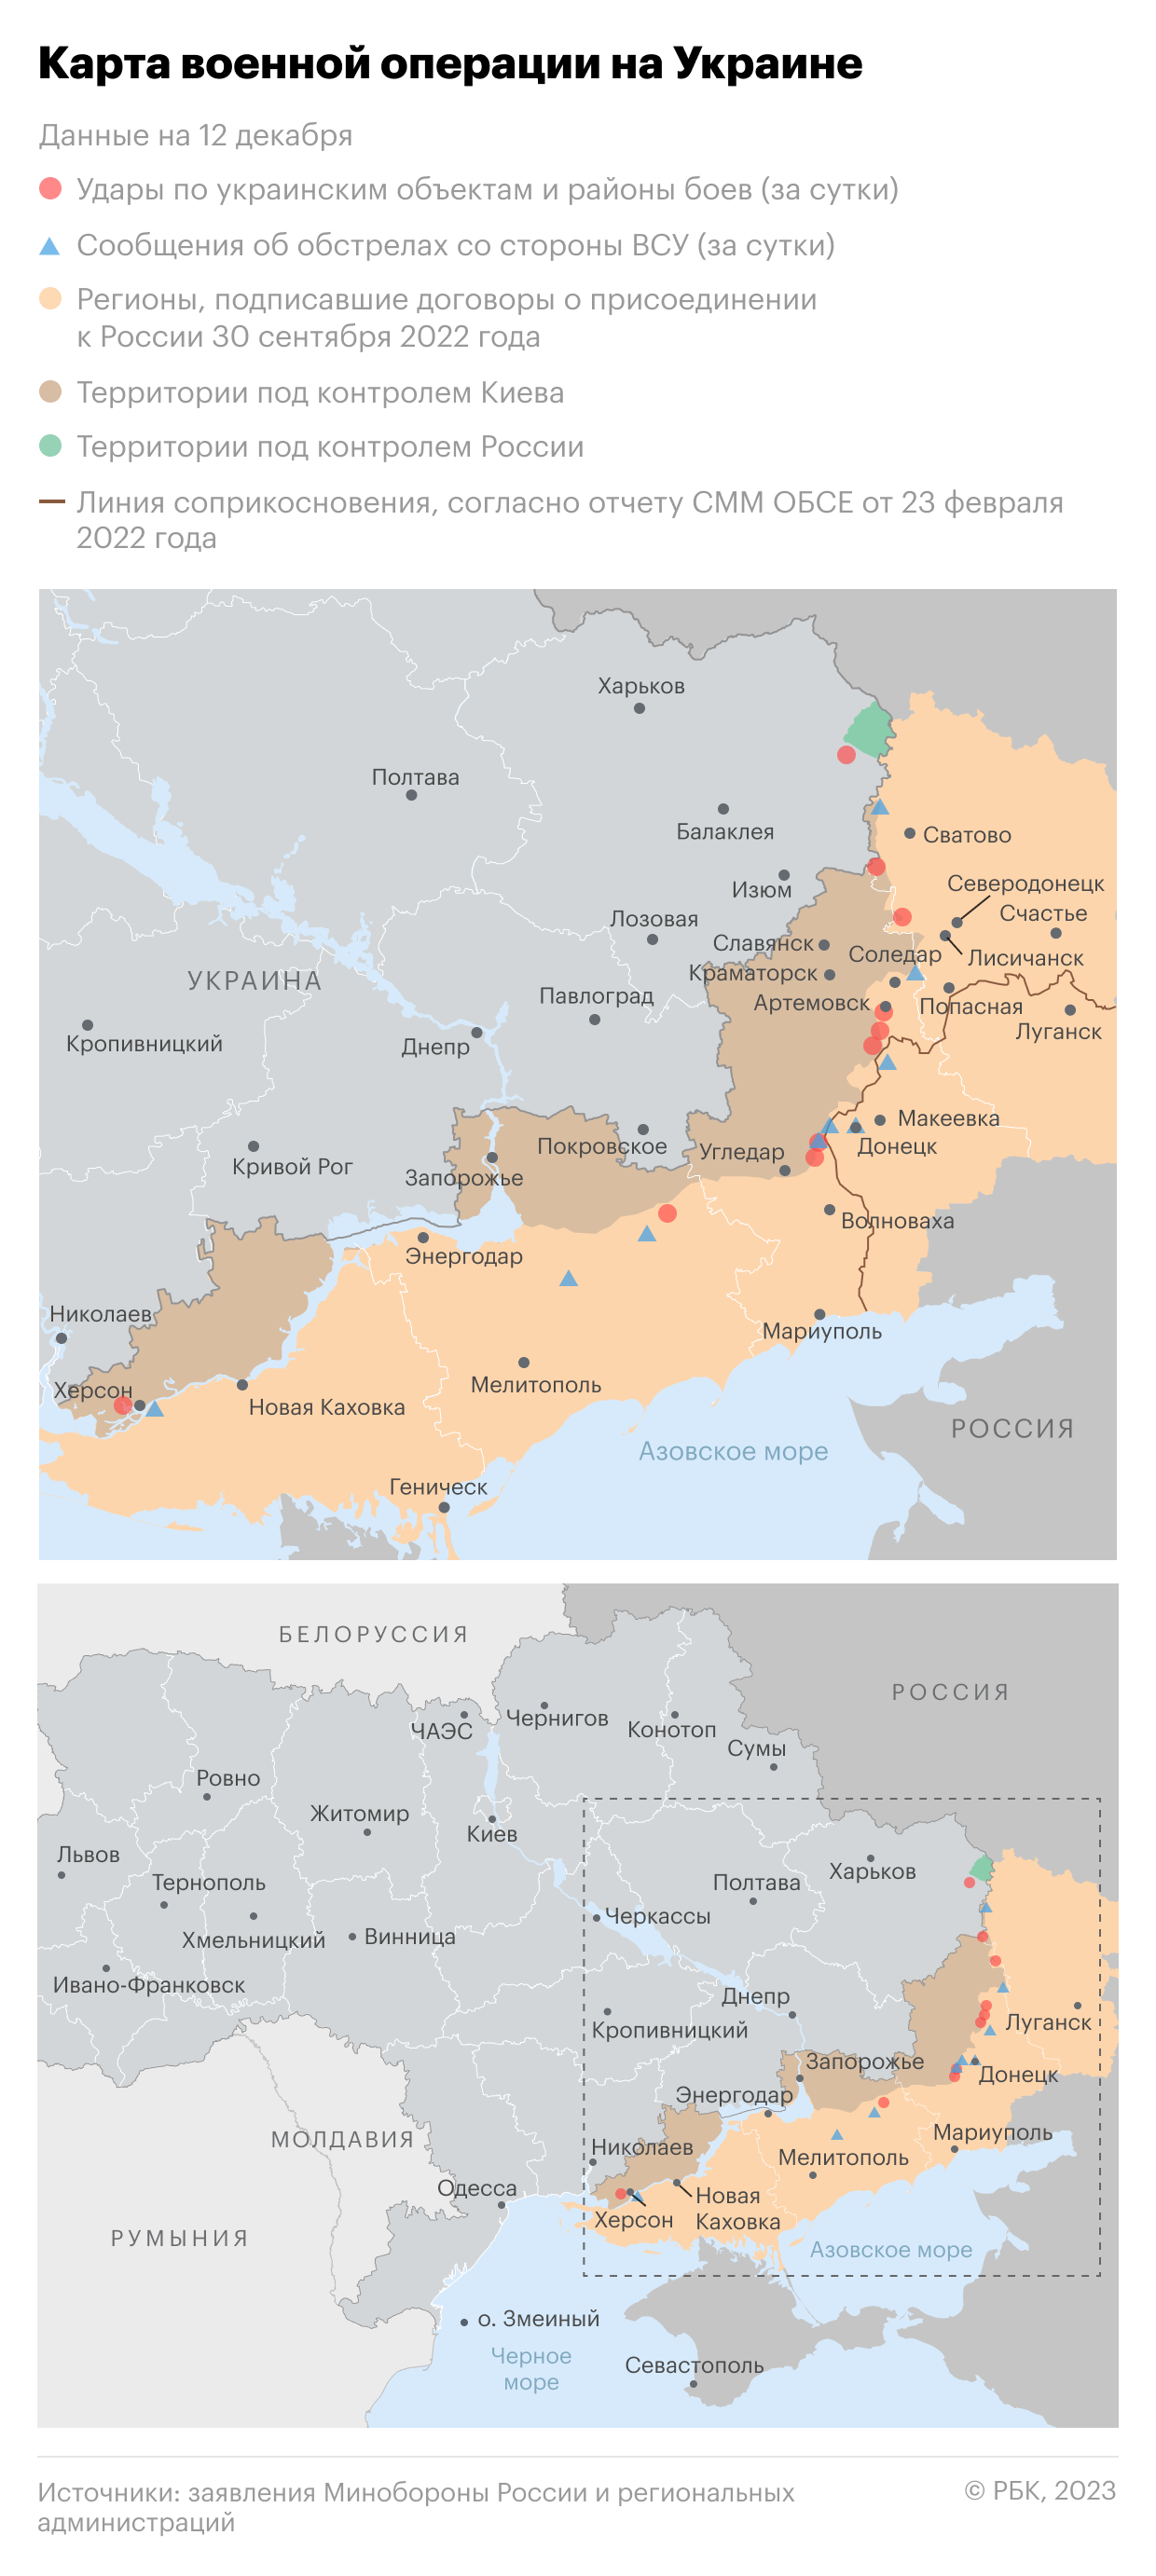 Карта украины сегодня боевых действий на сегодня подробно с городами